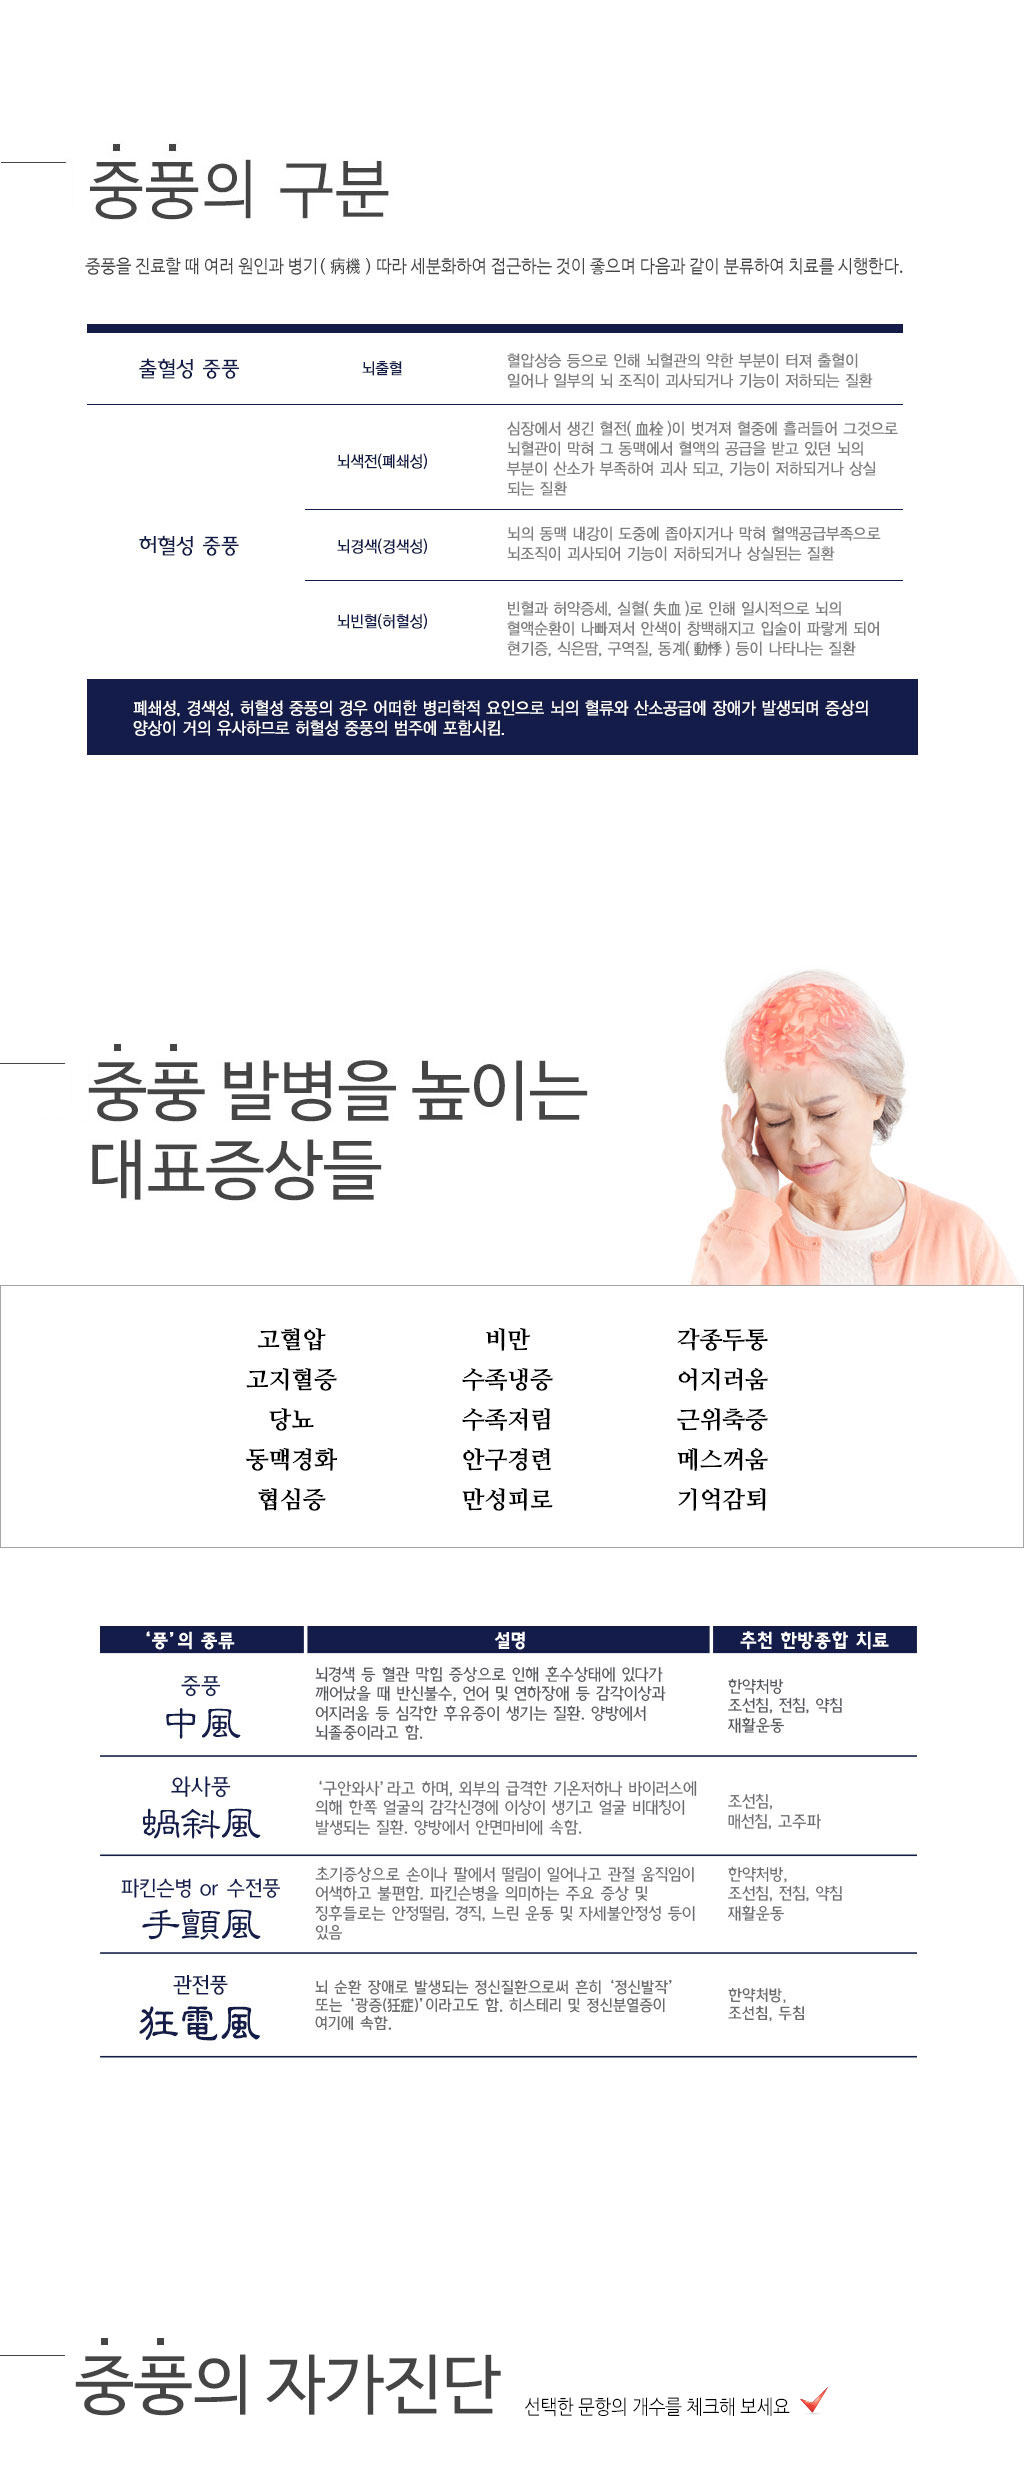 한국한의원, 한국한의원 중풍 클리닉, 메디컬대상, 중풍 전문 한의원